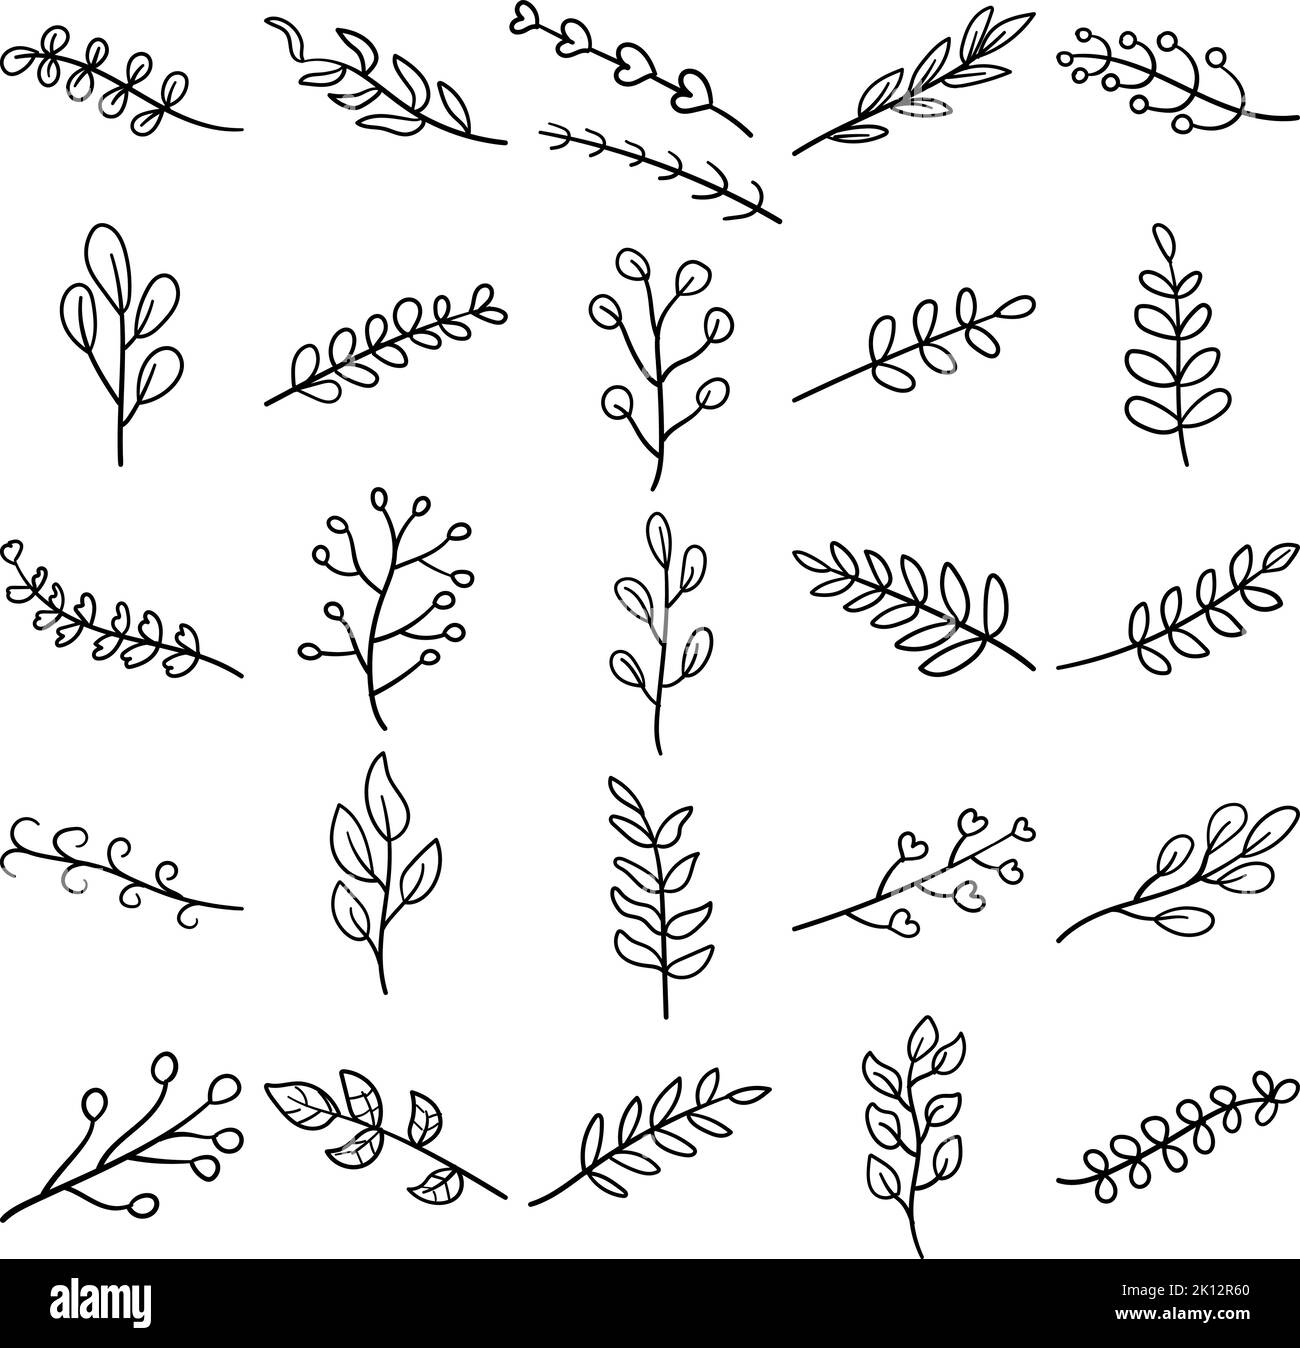 Planta mano dibujado Doodle línea de dibujo conjunto que contiene flor, hierba, hierba, seedling, arbusto, árbol, vid, cizaña, anual, bienal, casquillo, reductor, cutt Ilustración del Vector